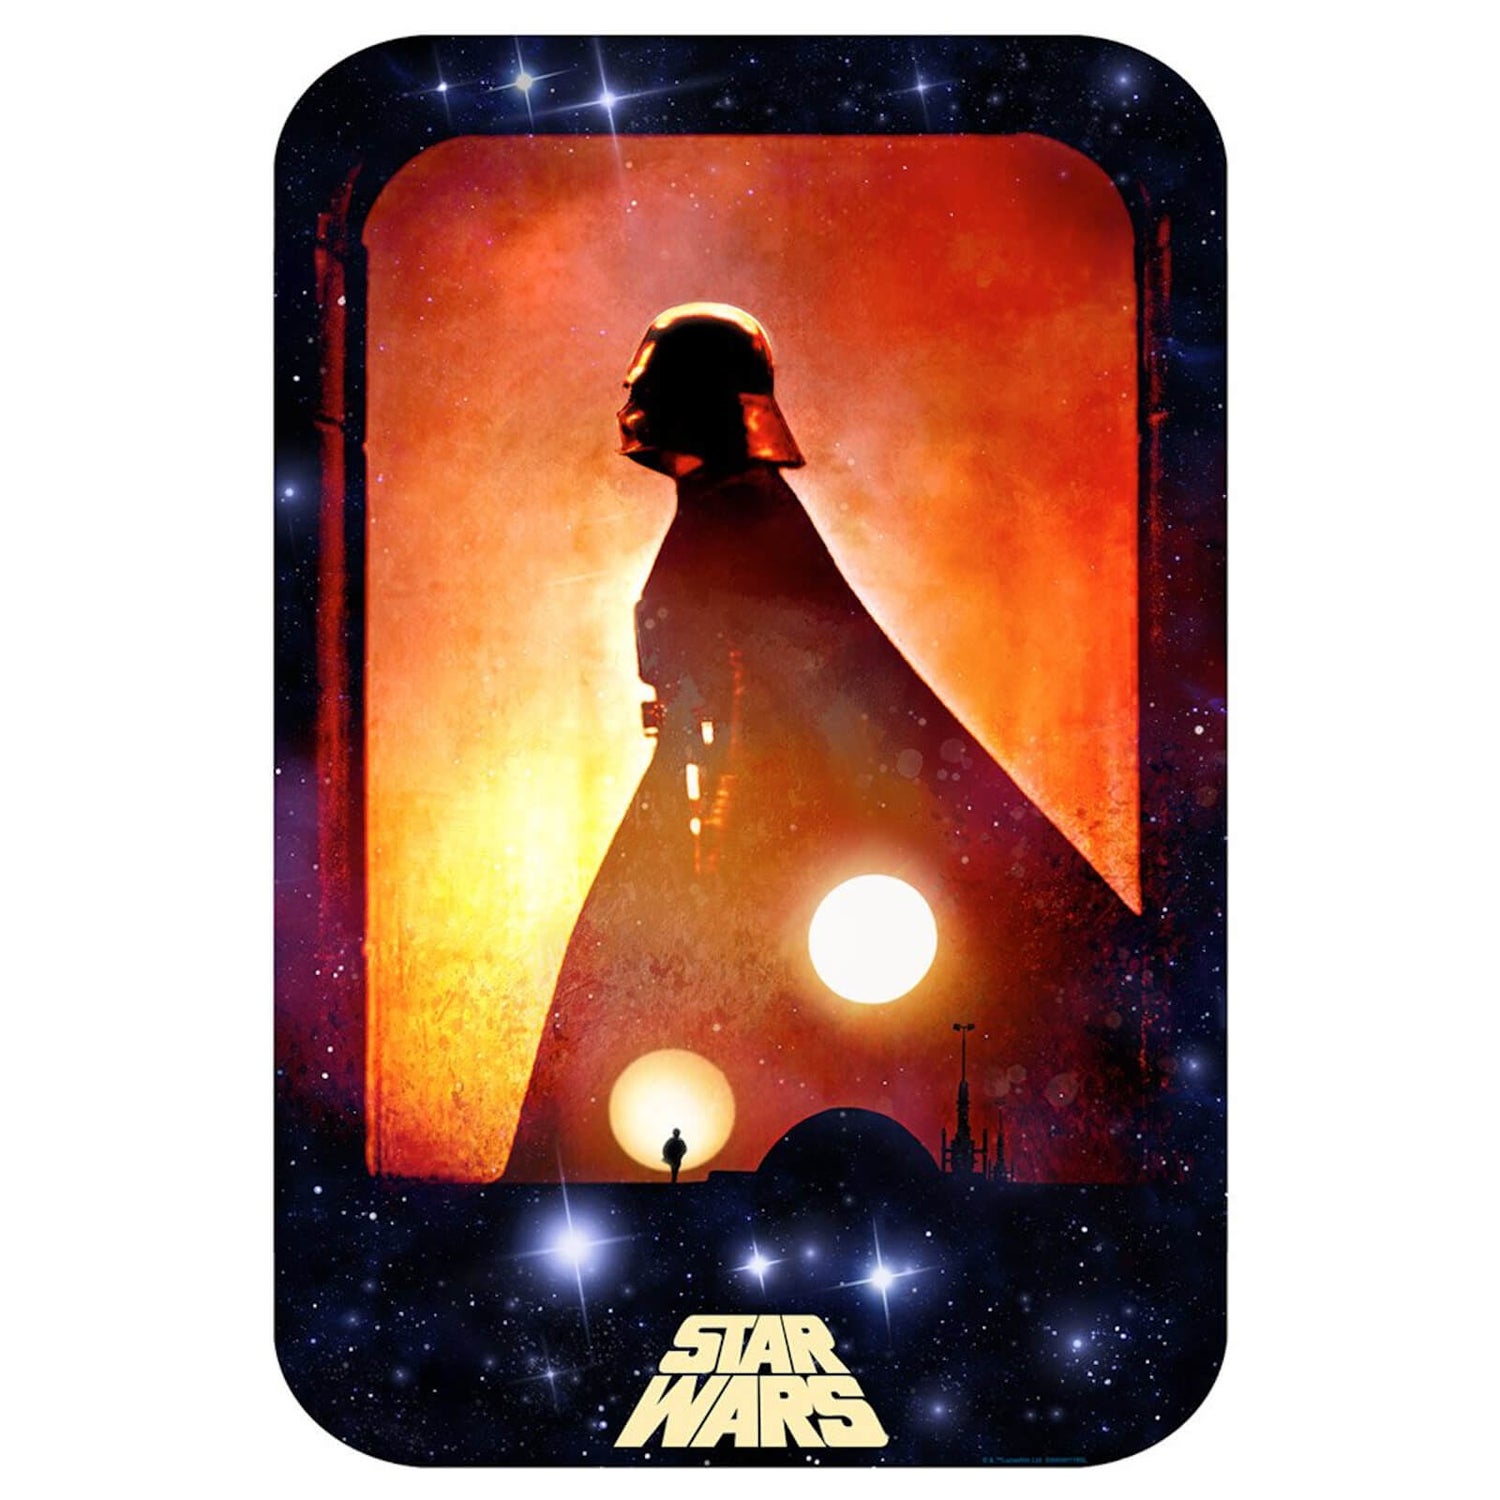 Star Wars "Rebel Dawn" Lithograph by Zoltan Simon